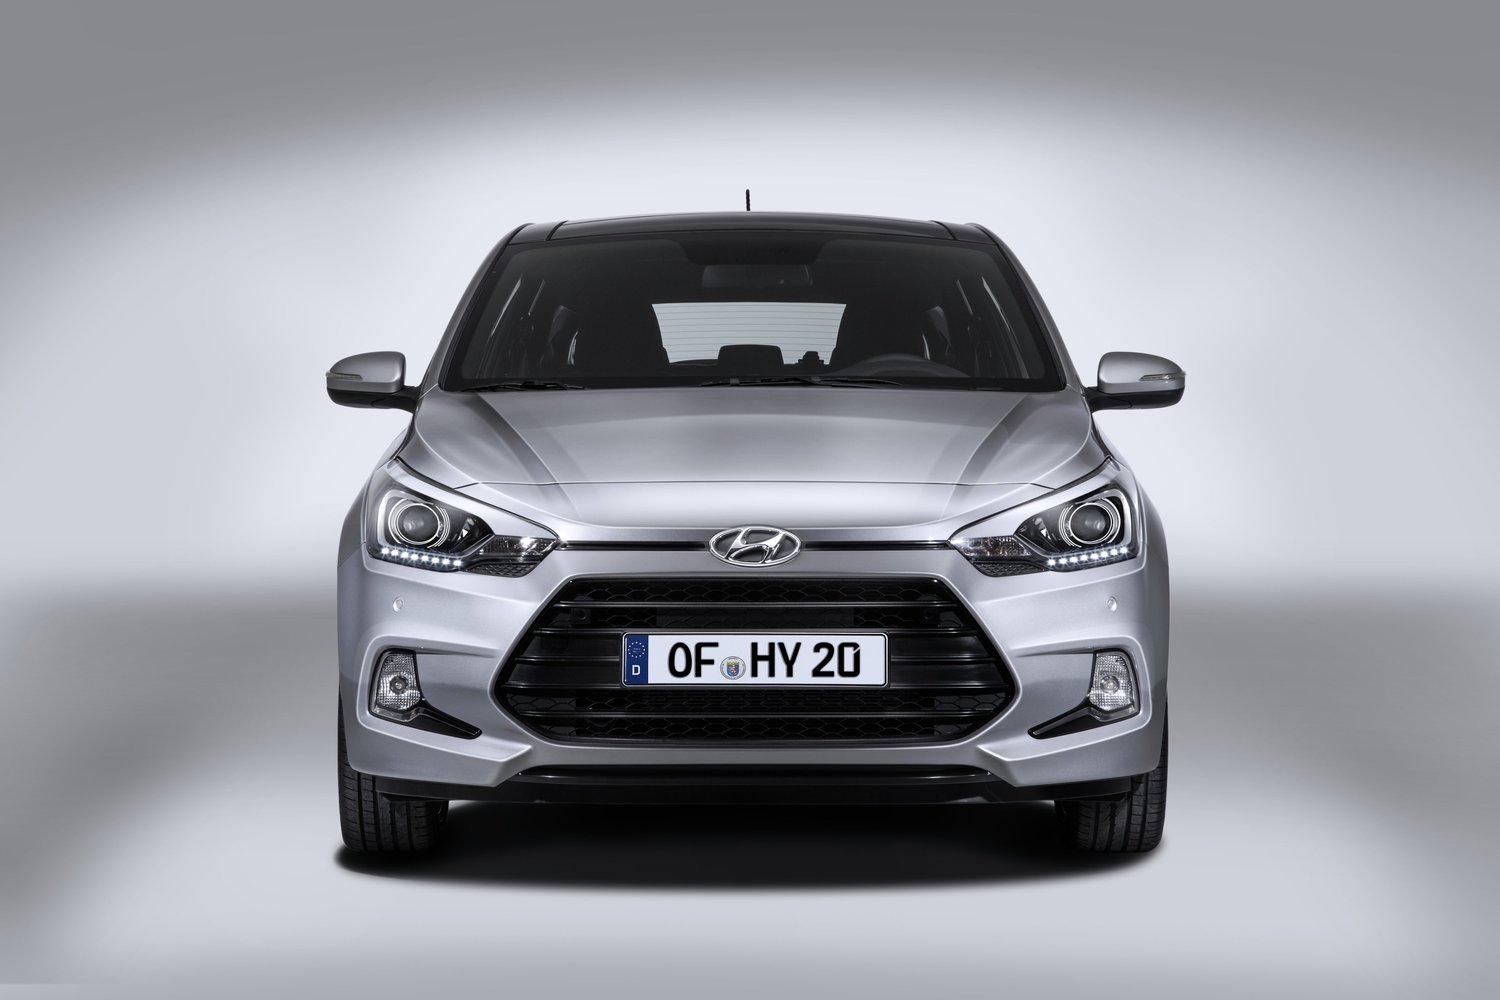 хэтчбек 3 дв. Coupe Hyundai i20 2014 - 2016г выпуска модификация 1.1 MT (75 л.с.)